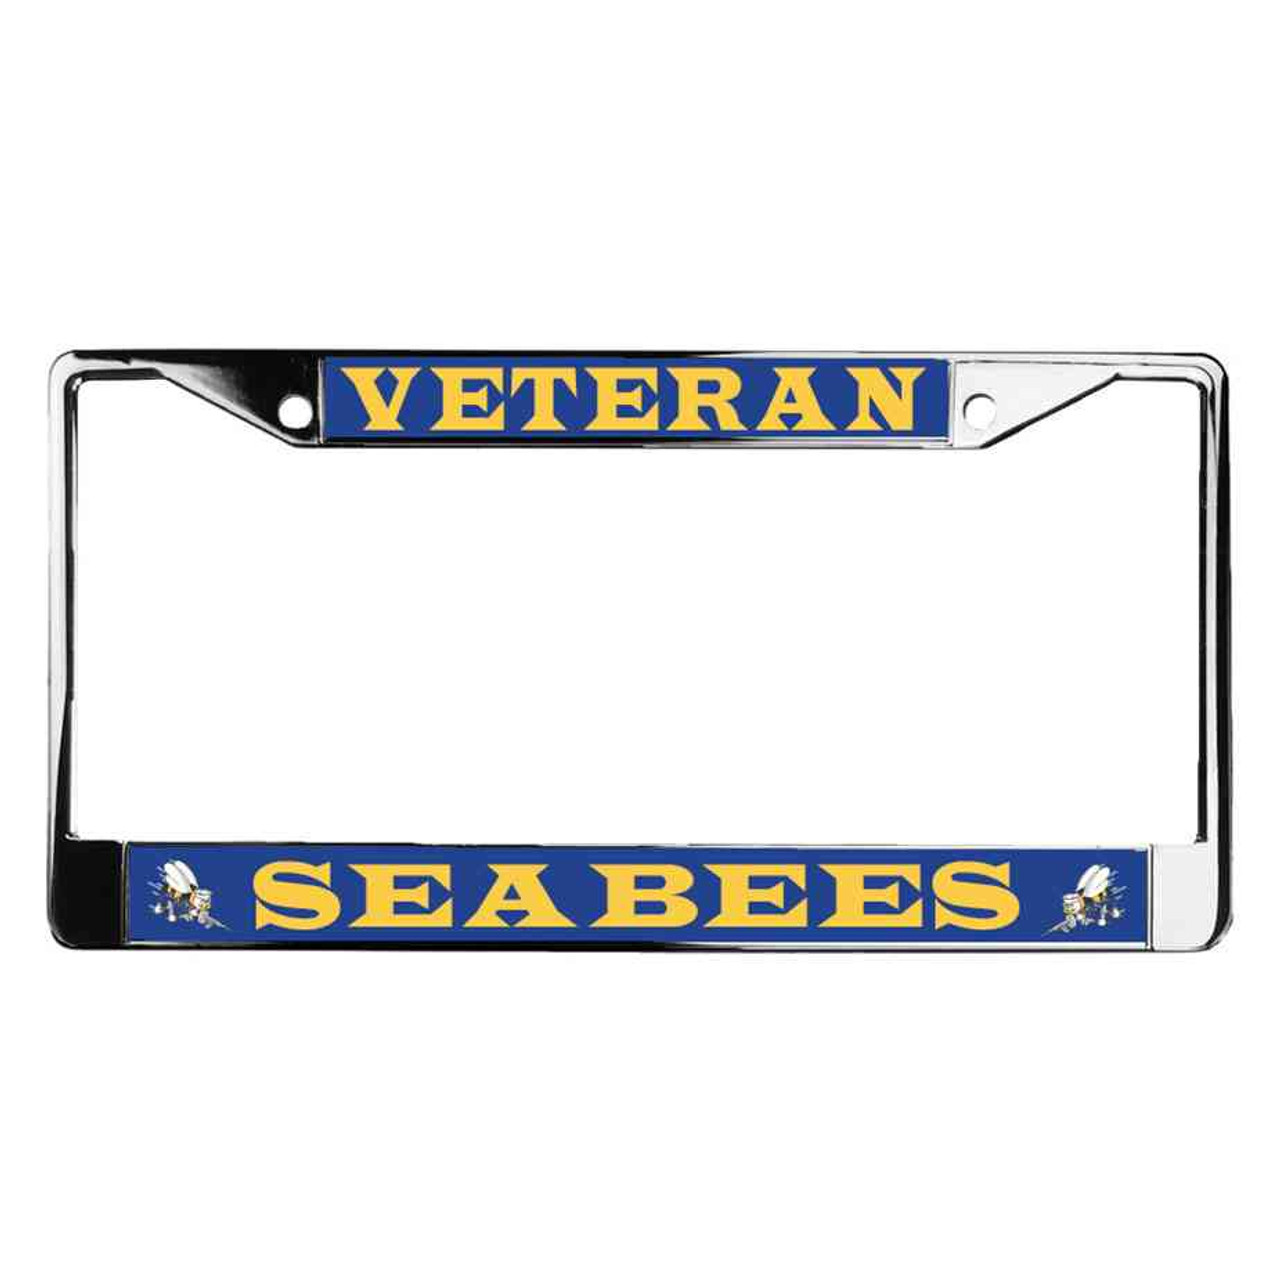 navy seabees veteran license plate frame